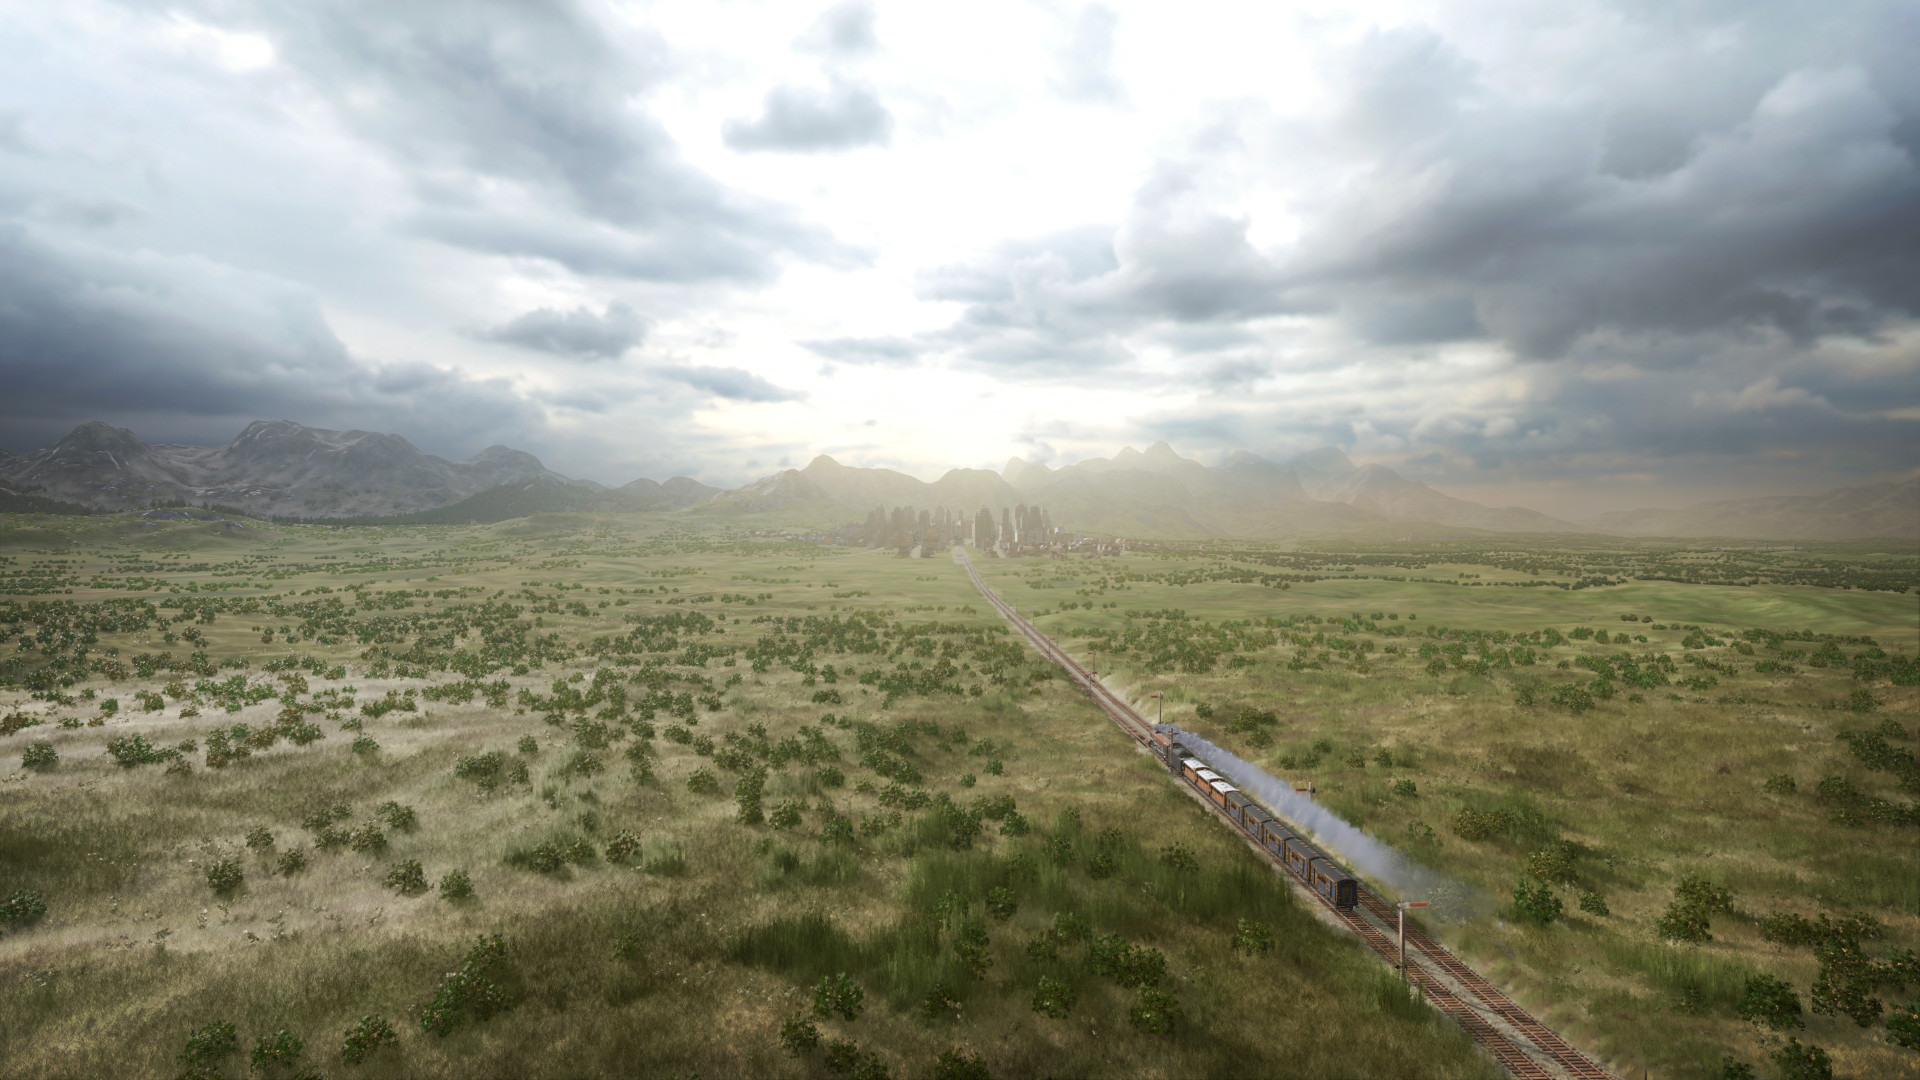 纵横欧美大陆！铁路经营模拟新作《铁路帝国 2》PS4 / PS5 / Switch 中文版夏季上市